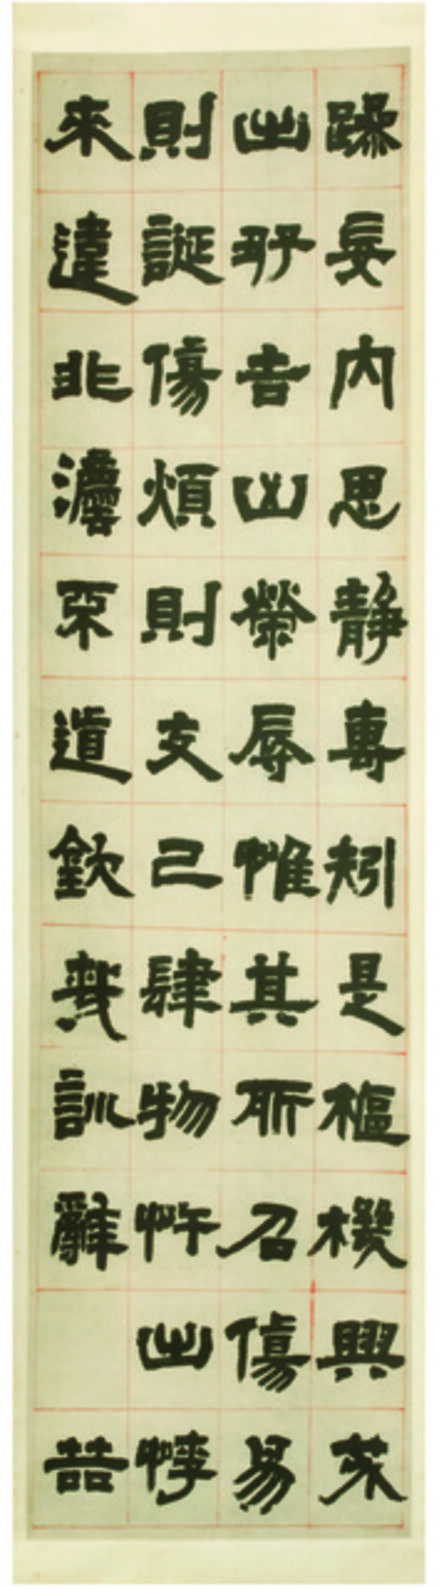 Deng Shiru, ‘Master Cheng’s Admonition on Seeing, Hearing, Words, and Deeds (Chengzi shi ting yan dong zhi zhen)’, 1805